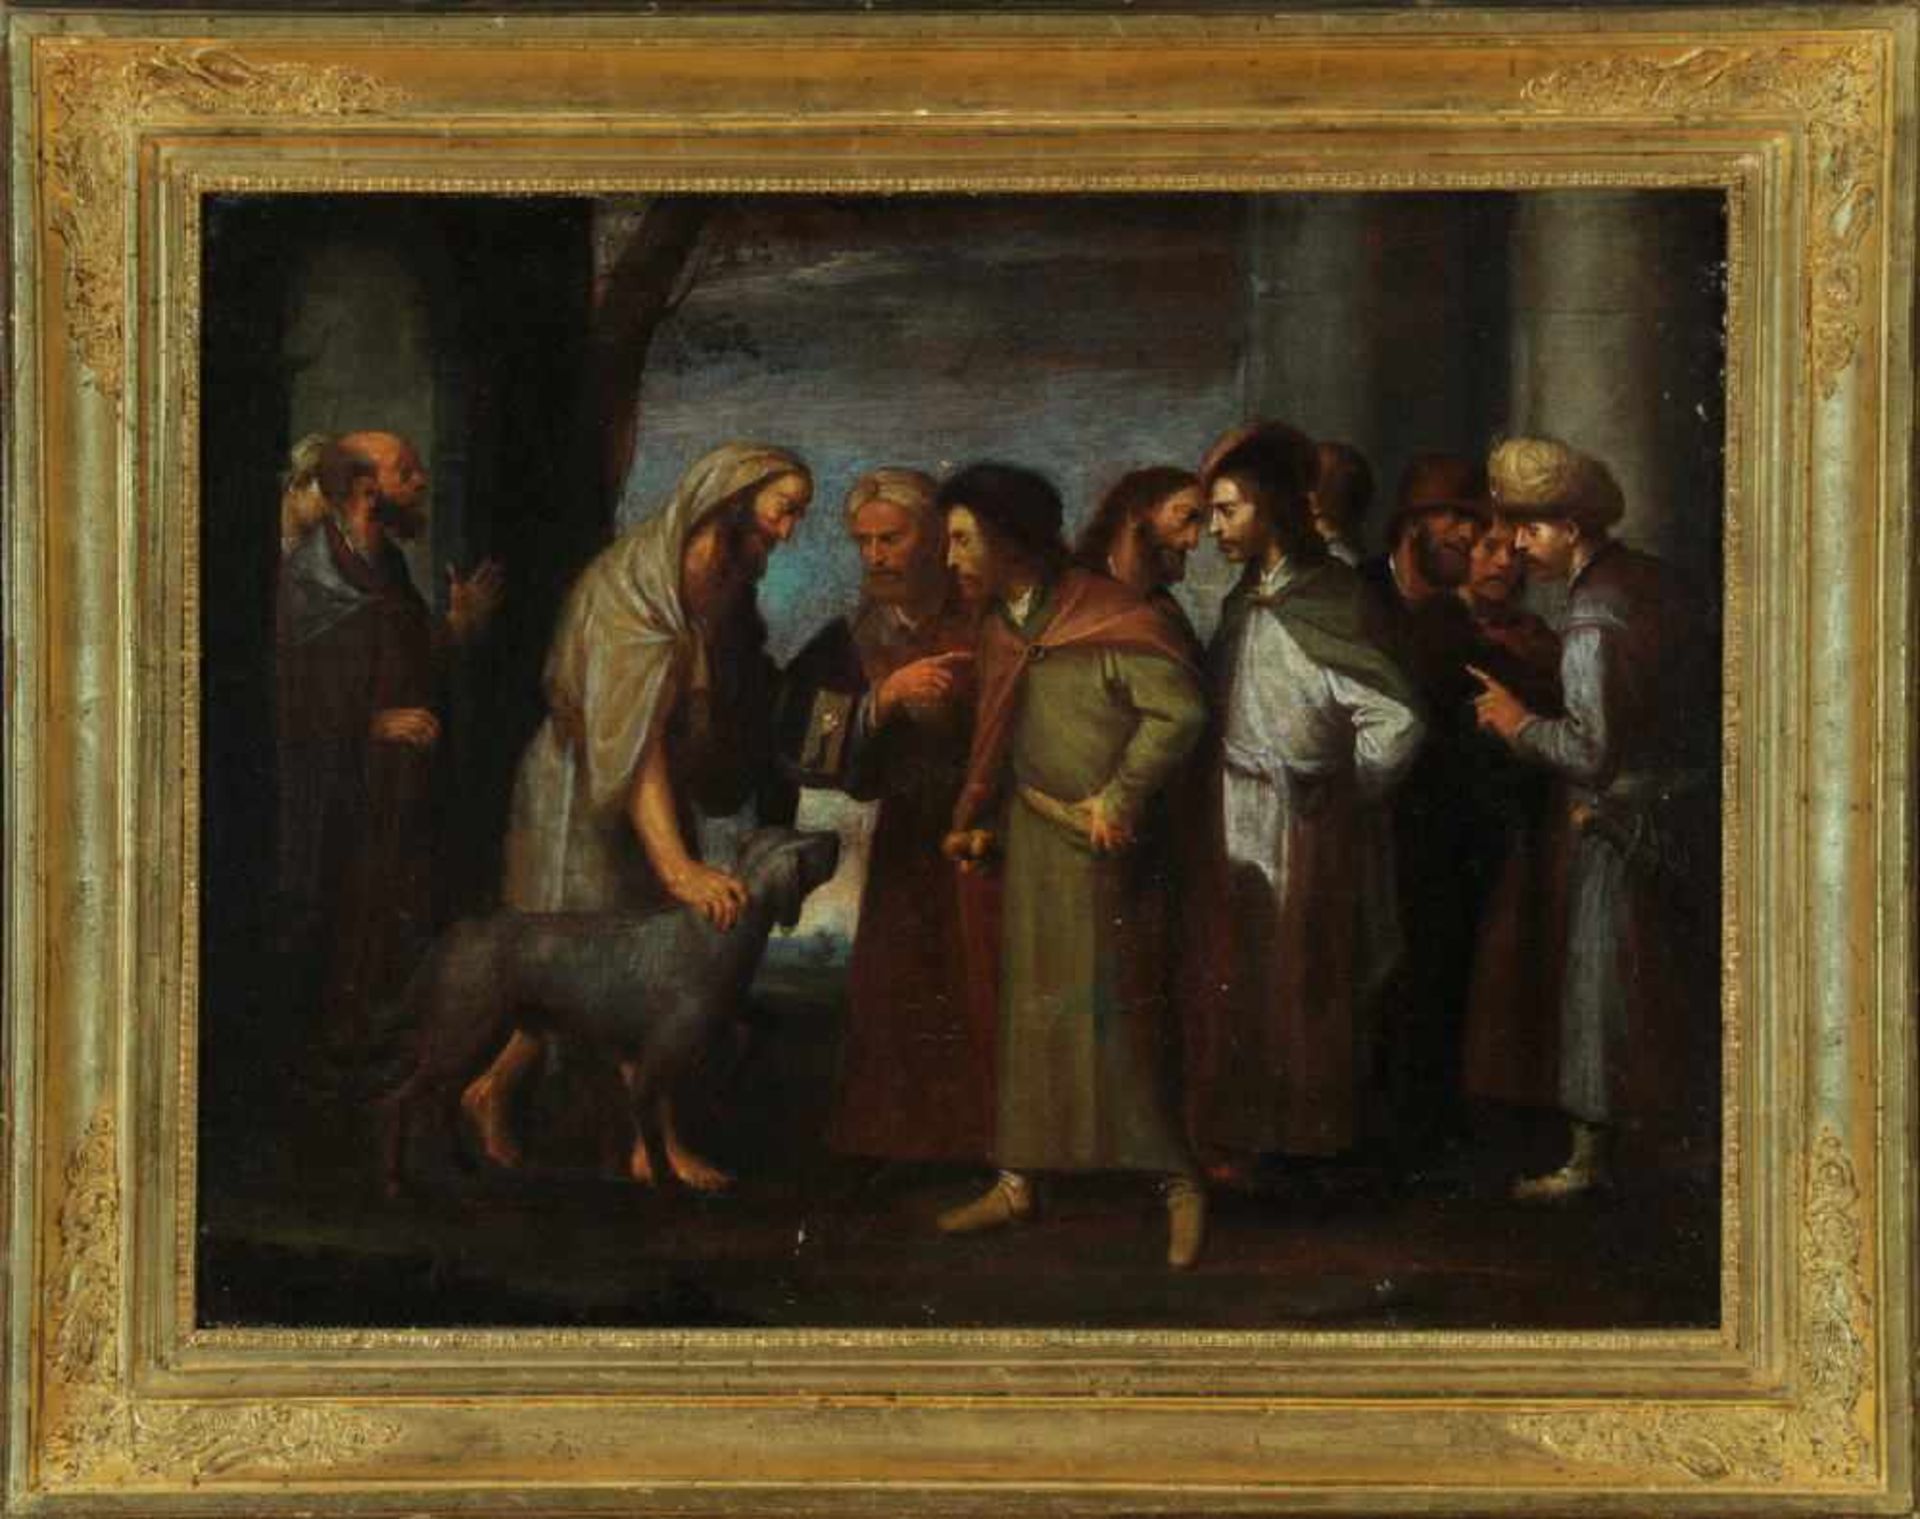 Bildnismaler des 18. Jh.Öl/Lwd, doubl., 48 x 64 cm, " Diogenes mit der Laterne auf dem Markte